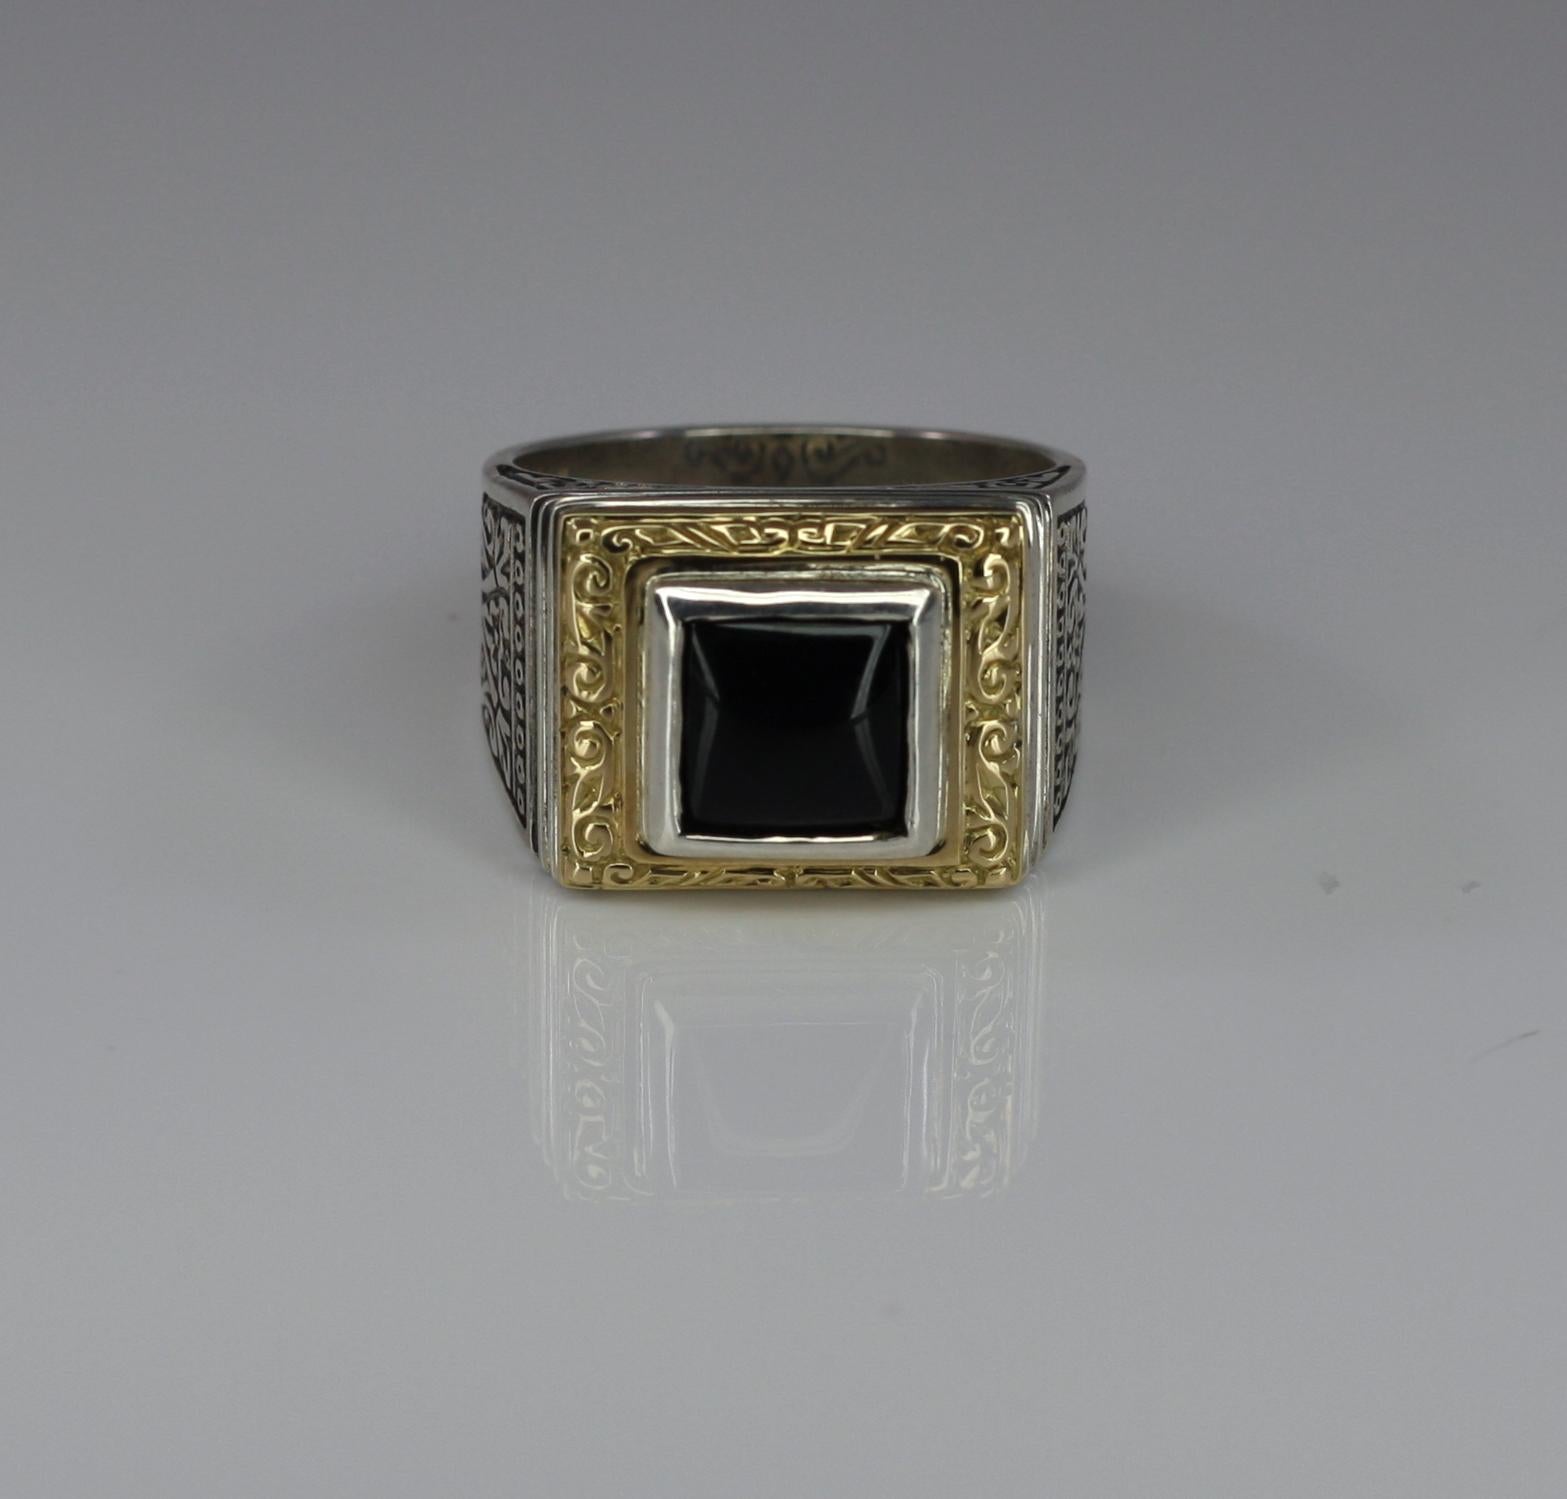 S.Georgios Designer Unisex Ring, handgefertigt aus Sterling Silber und massivem 18 Karat Gelbgold, um einen einzigartigen Look zu kreieren. Der wunderschöne Ring hat einen quadratischen Onyx und ist auch mit Rubelit erhältlich.
Dieses atemberaubende